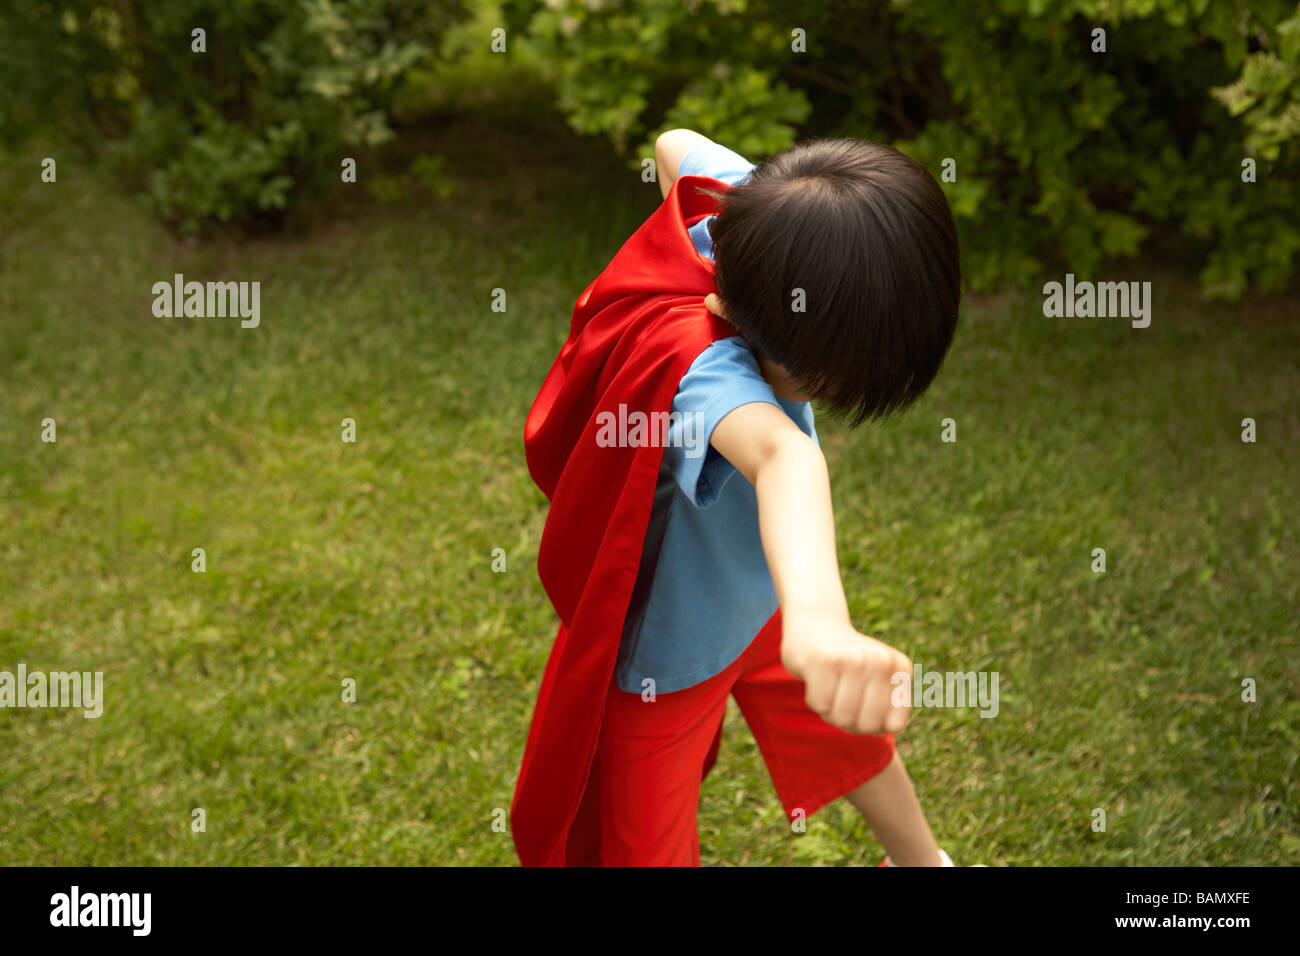 Junge In Red Cape spielen im Garten Stockfoto